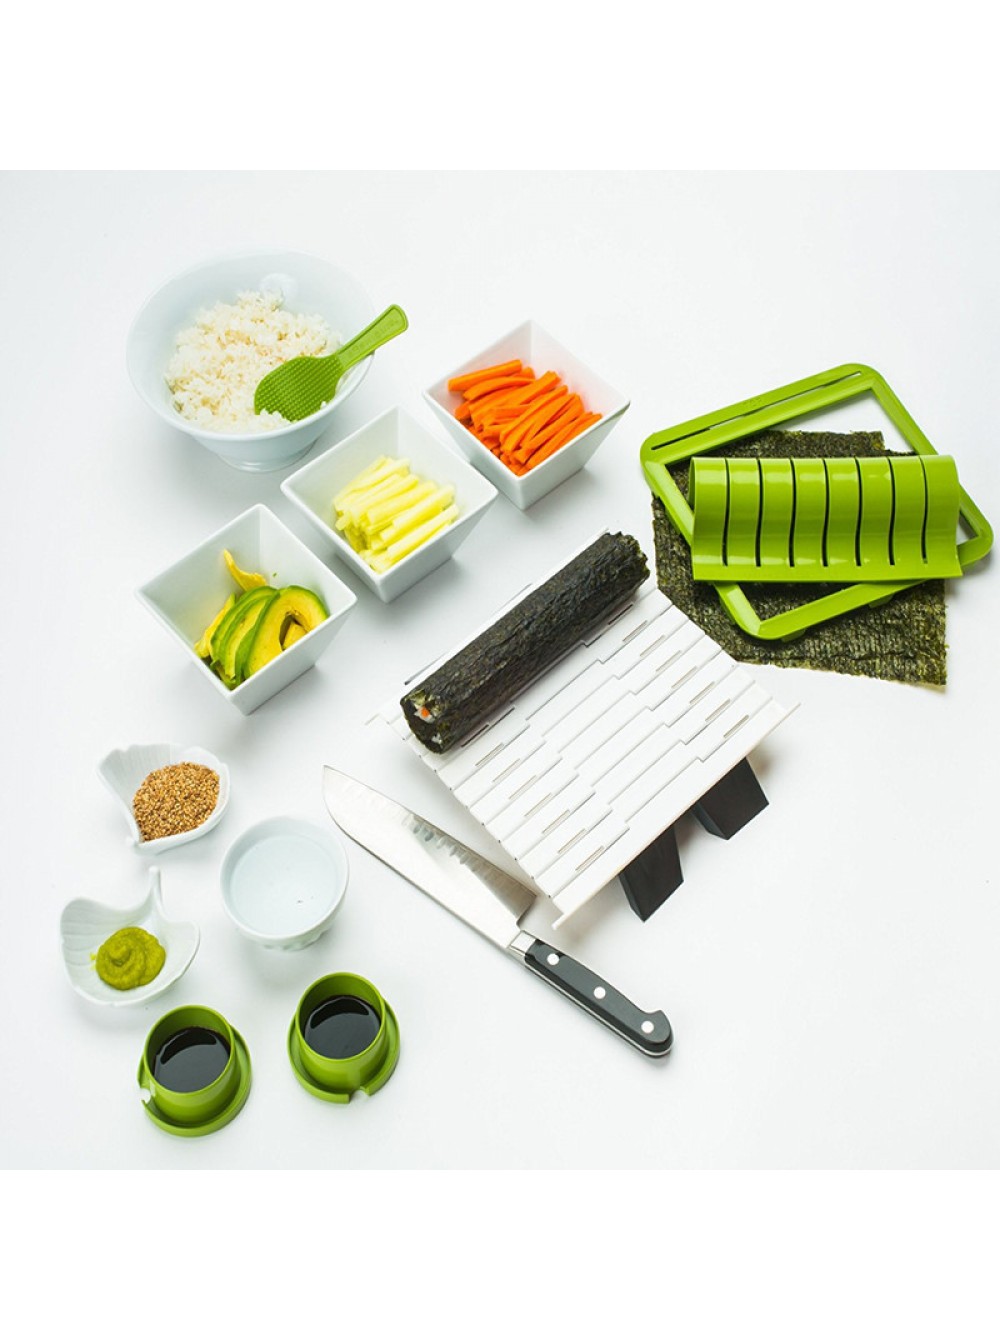 Как делать суши из набора для суши фото 39